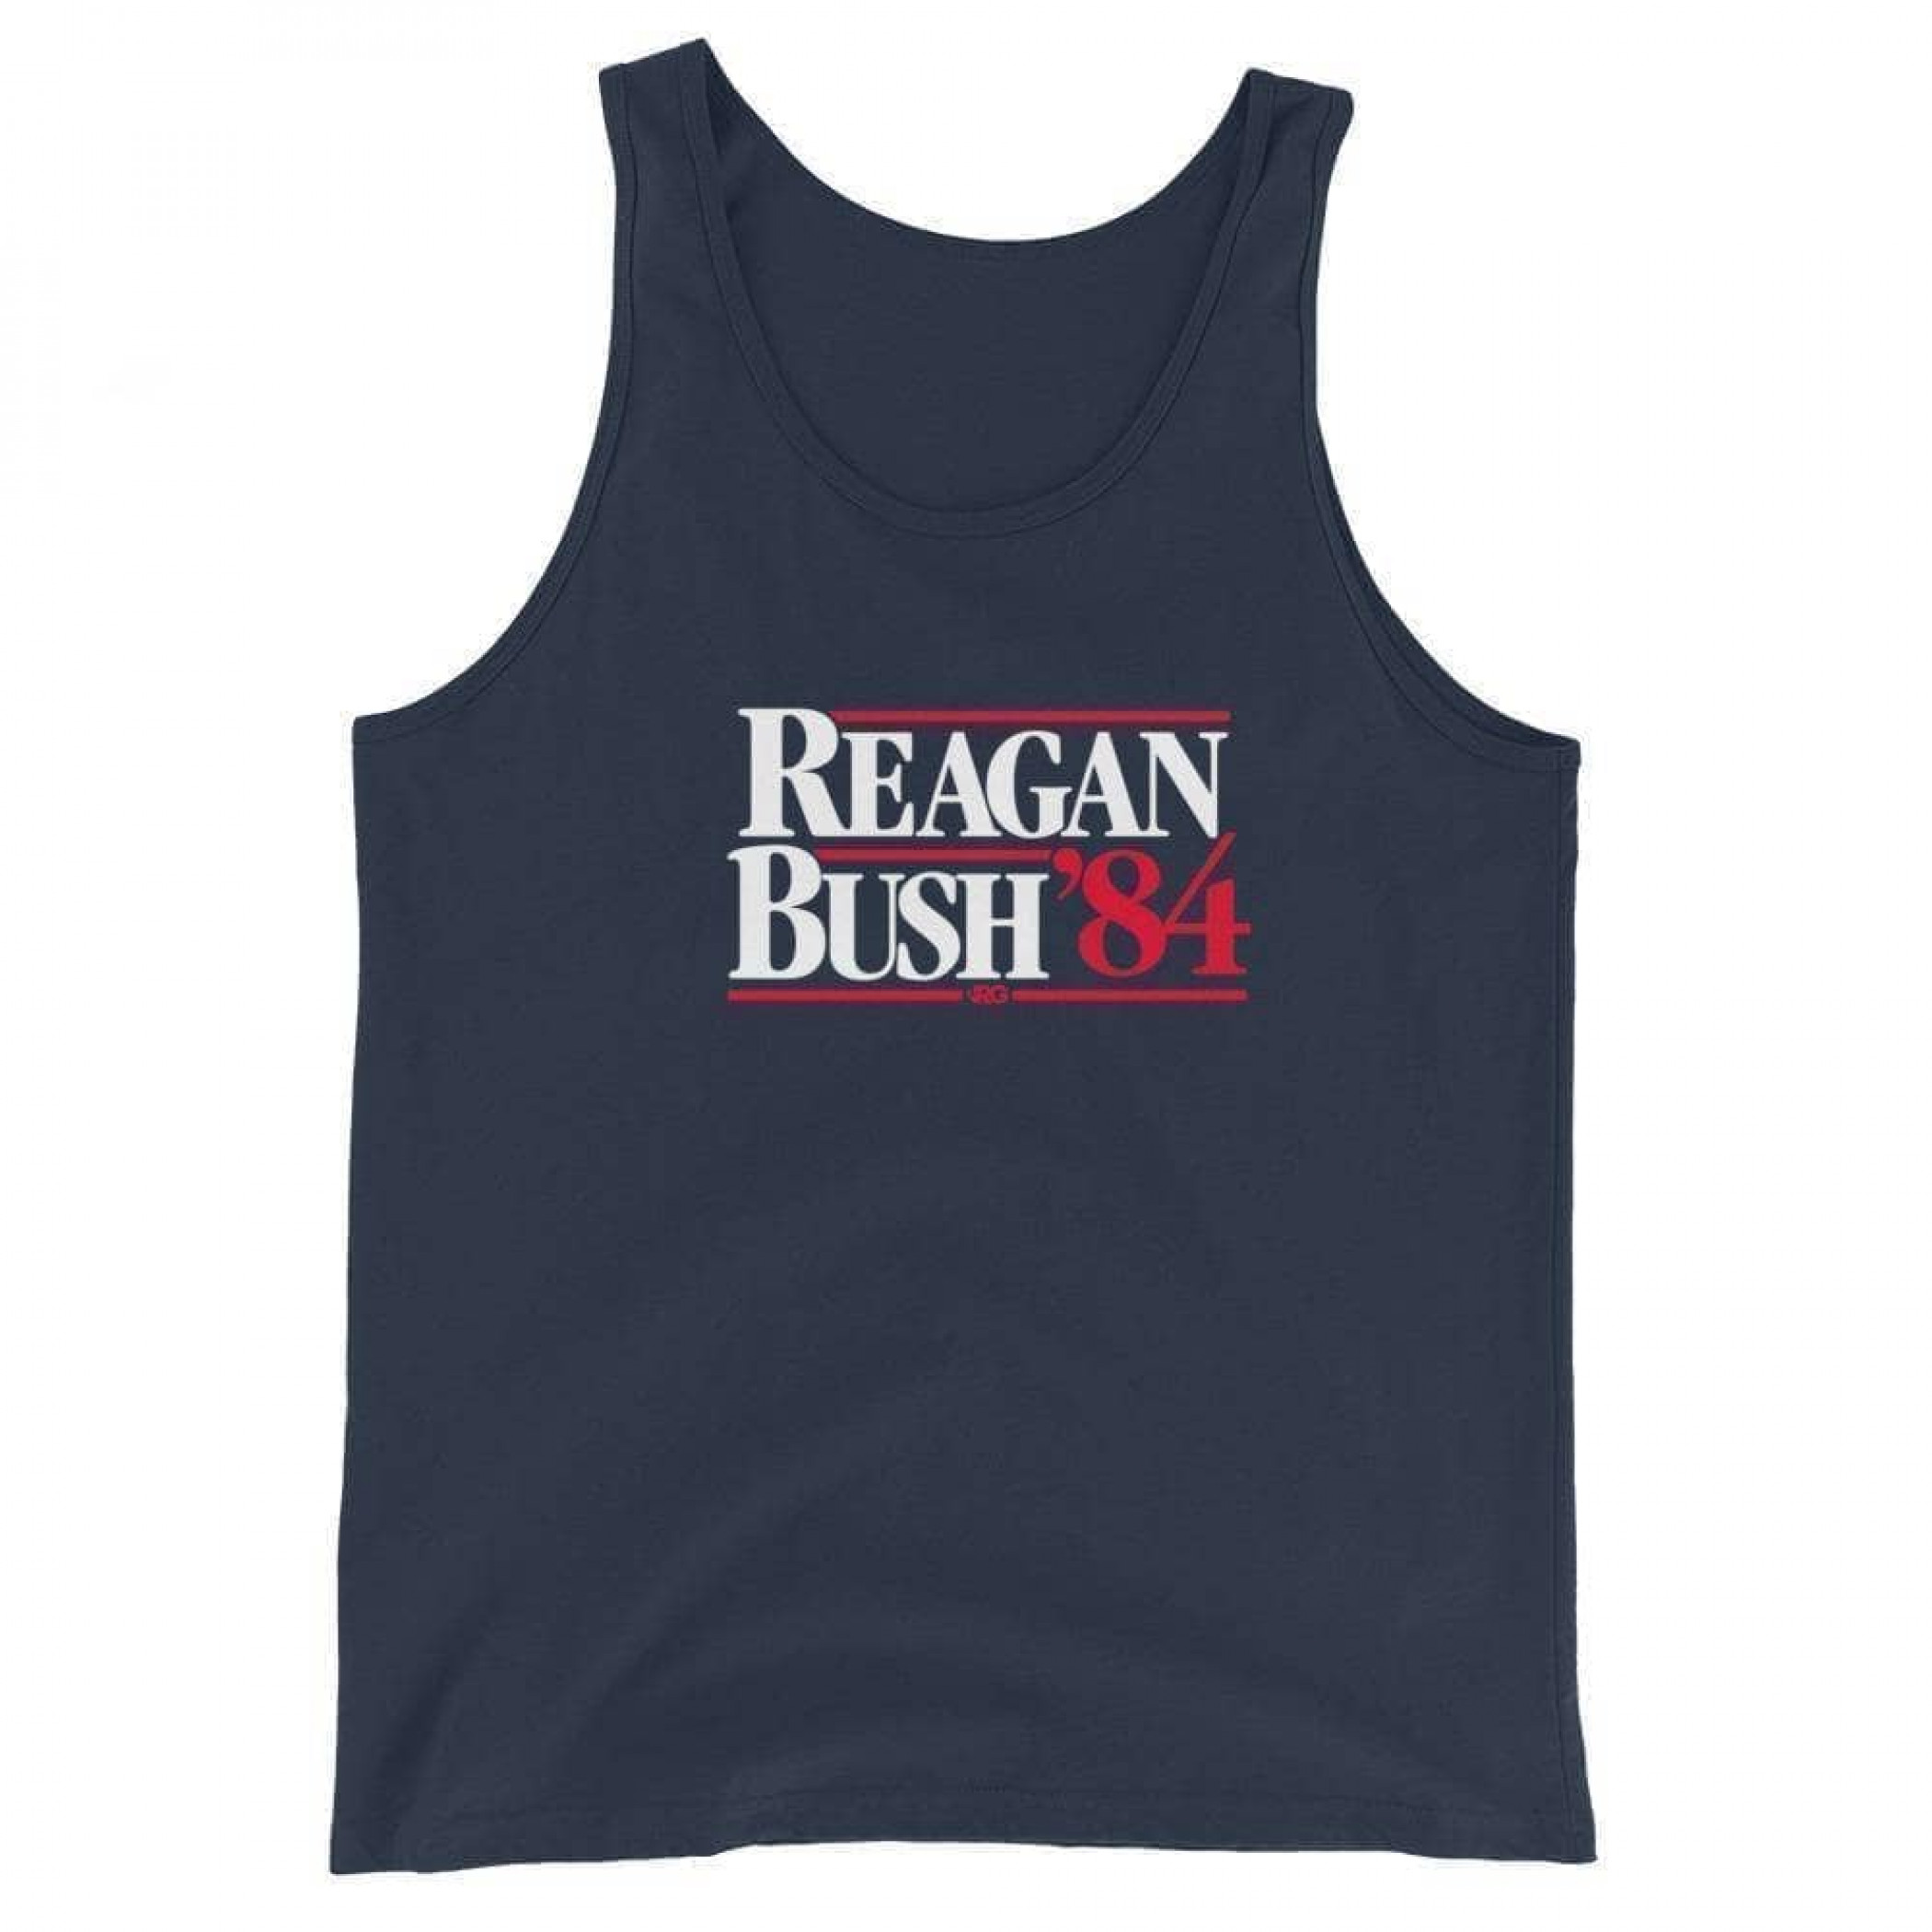 Reagan Bush '84 - Navy Tank